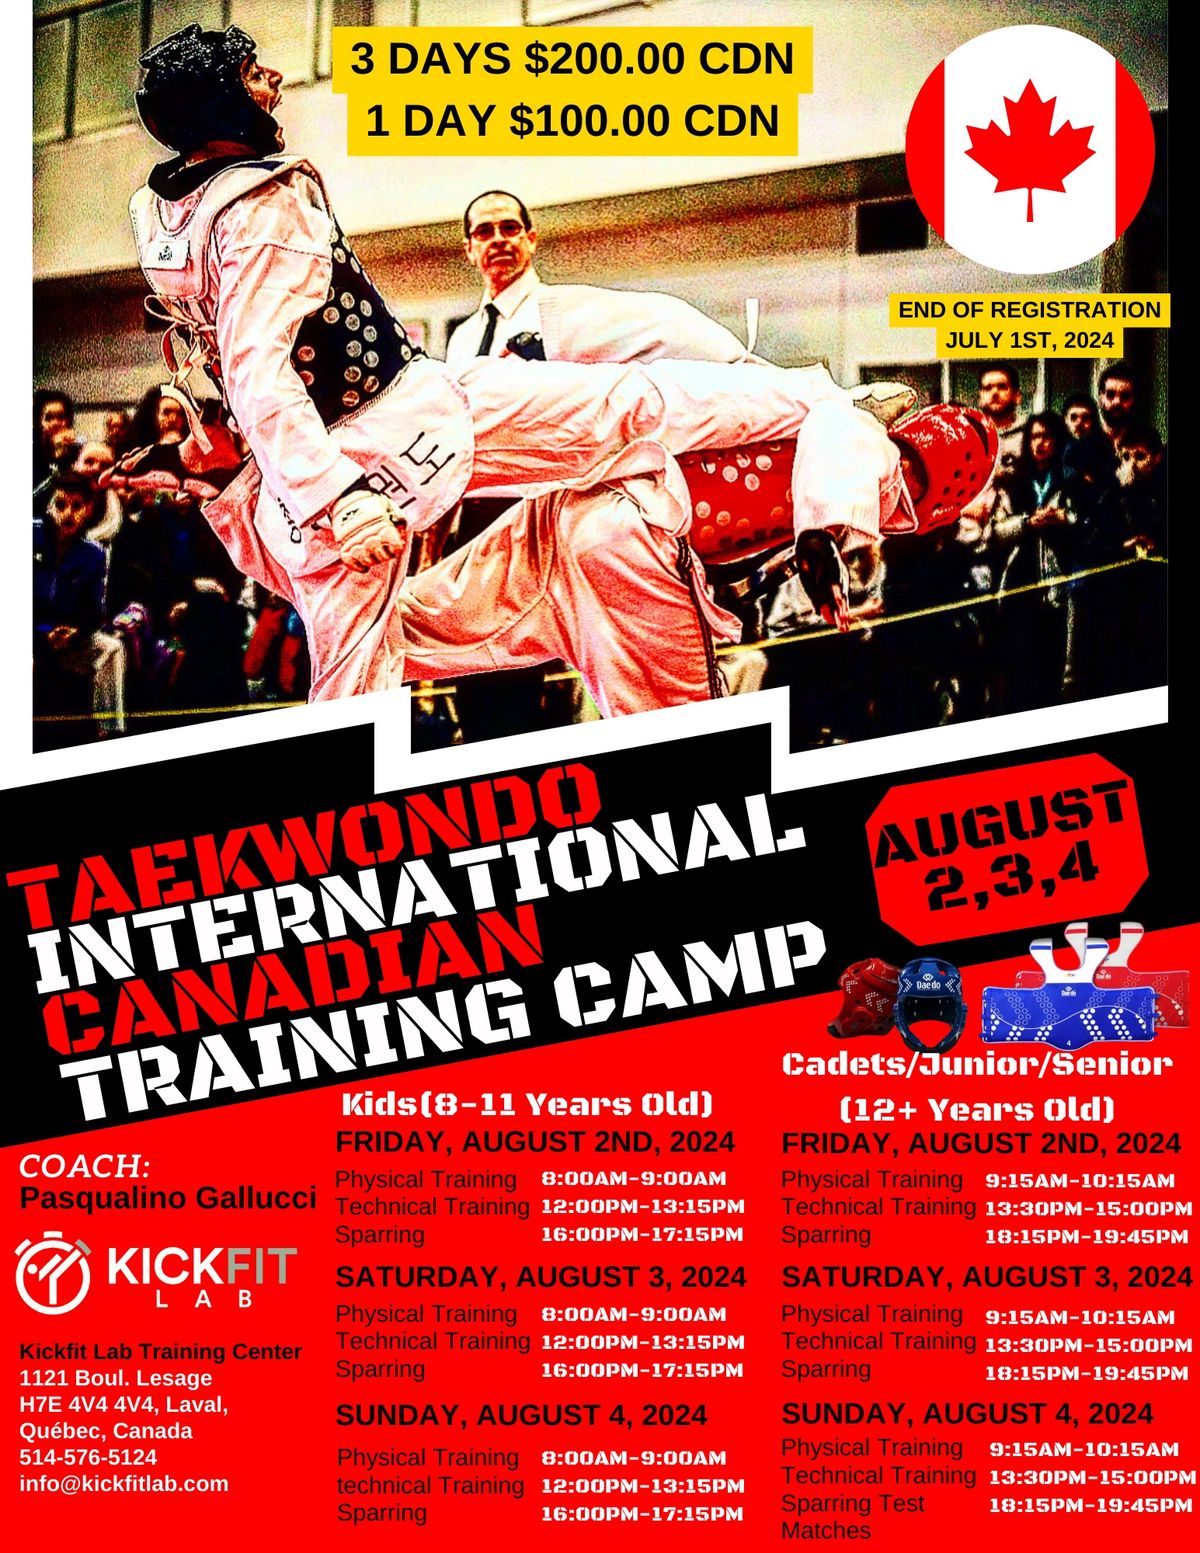 Taekwondo International Canadian Training Camp